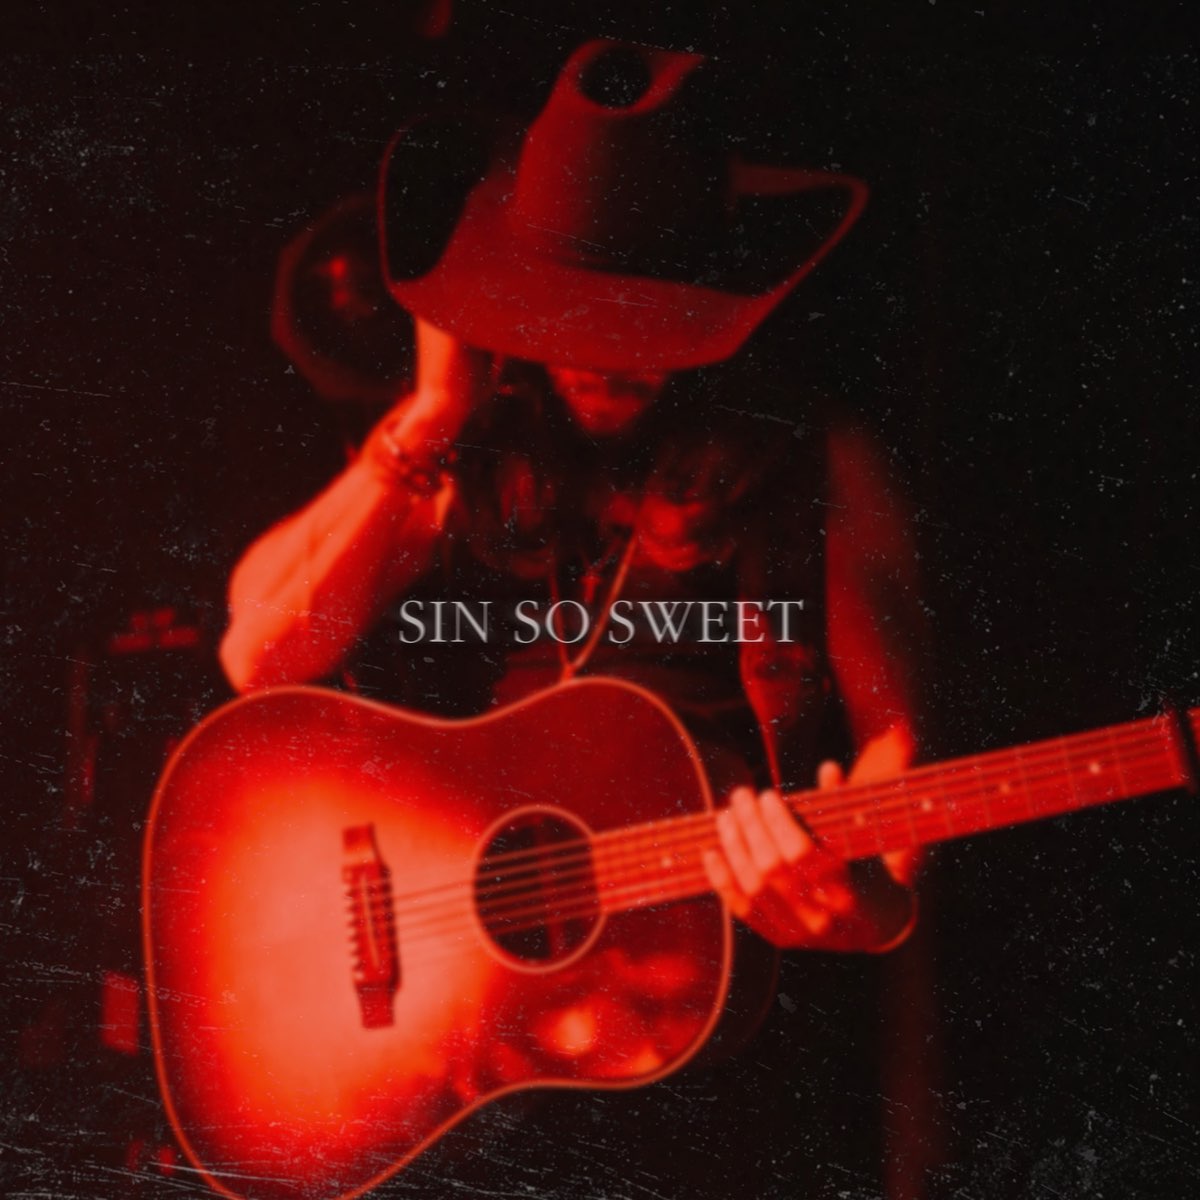 ‎Sin So Sweet - Single - Album by Warren Zeiders - Apple Music